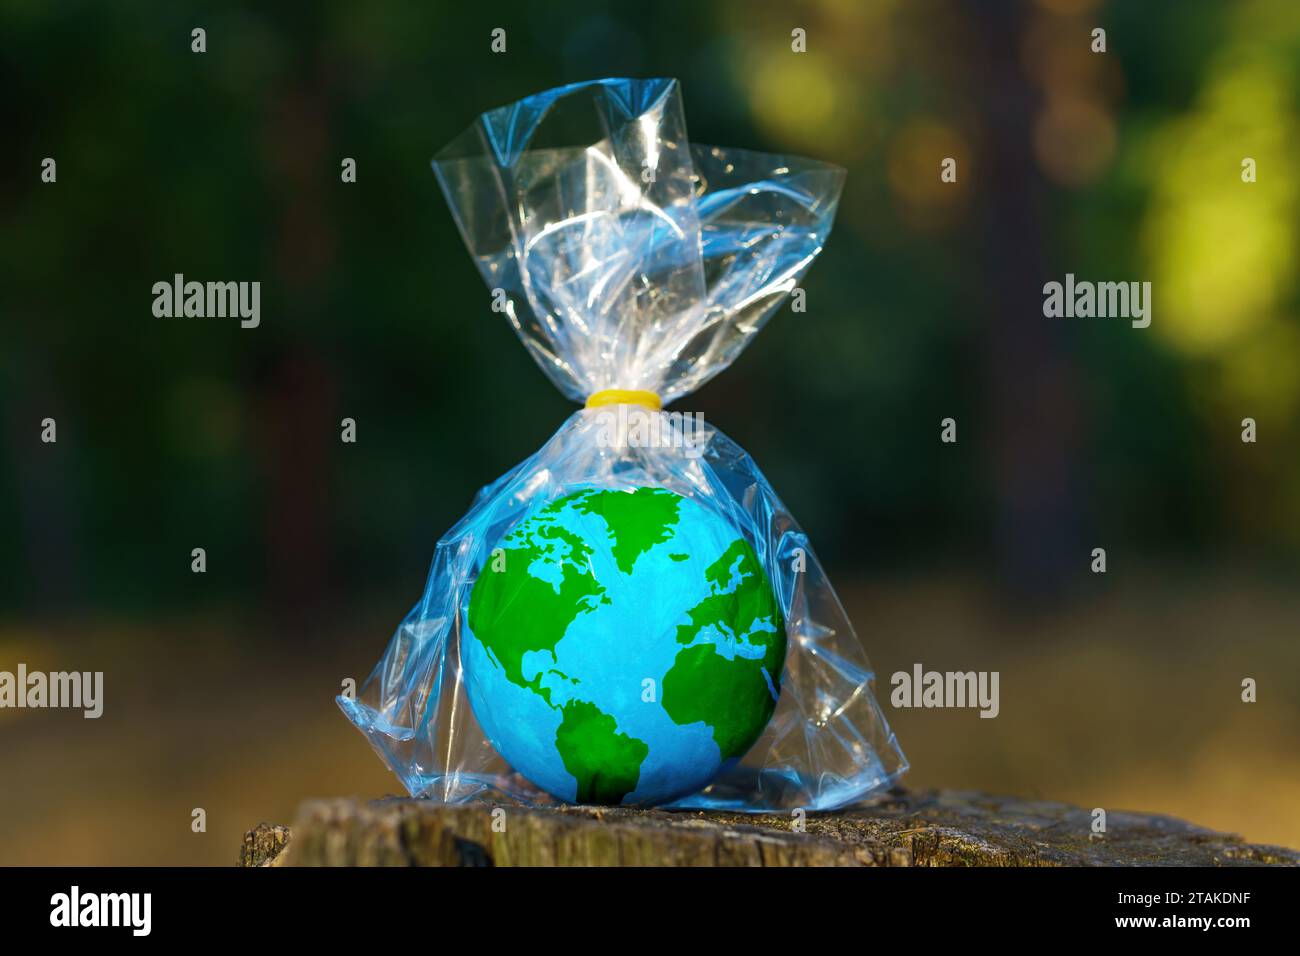 Kleines Kugelmodell in transparenter Kunststoffverpackung sitzt auf einem Waldstumpf. Plastische Verschmutzung und umweltbewusstseinsbedingte Verwölbung Stockfoto